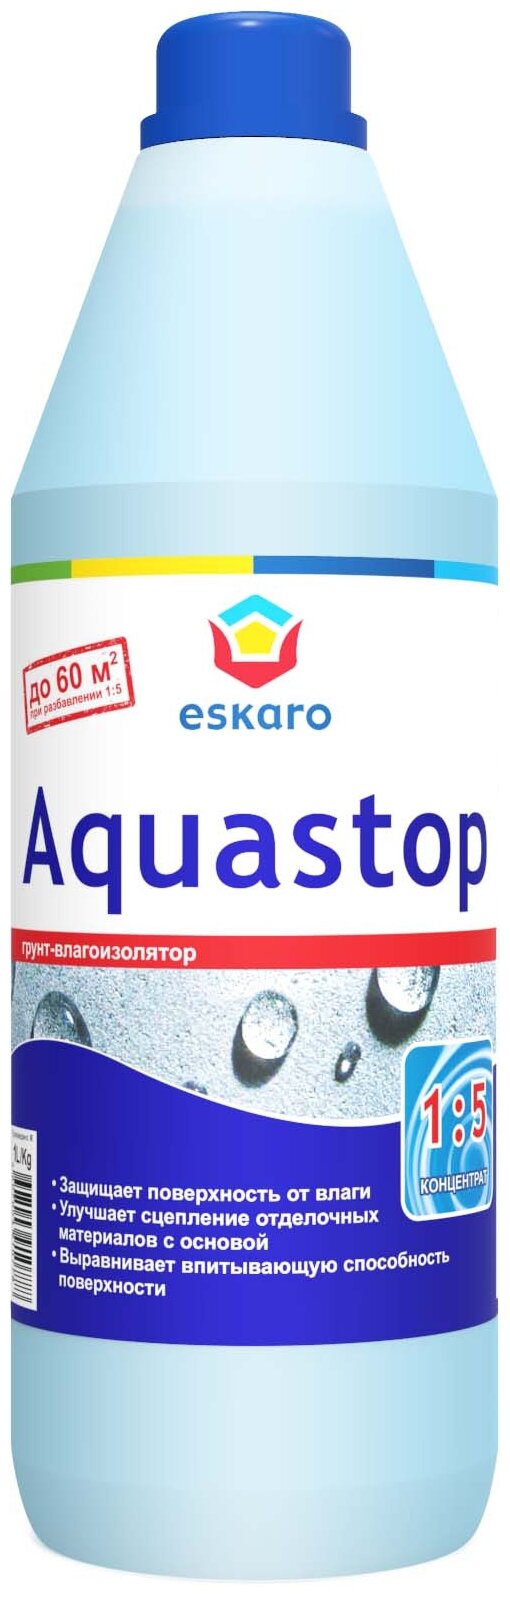 Грунтовка Eskaro Aquastop влагоизолятор